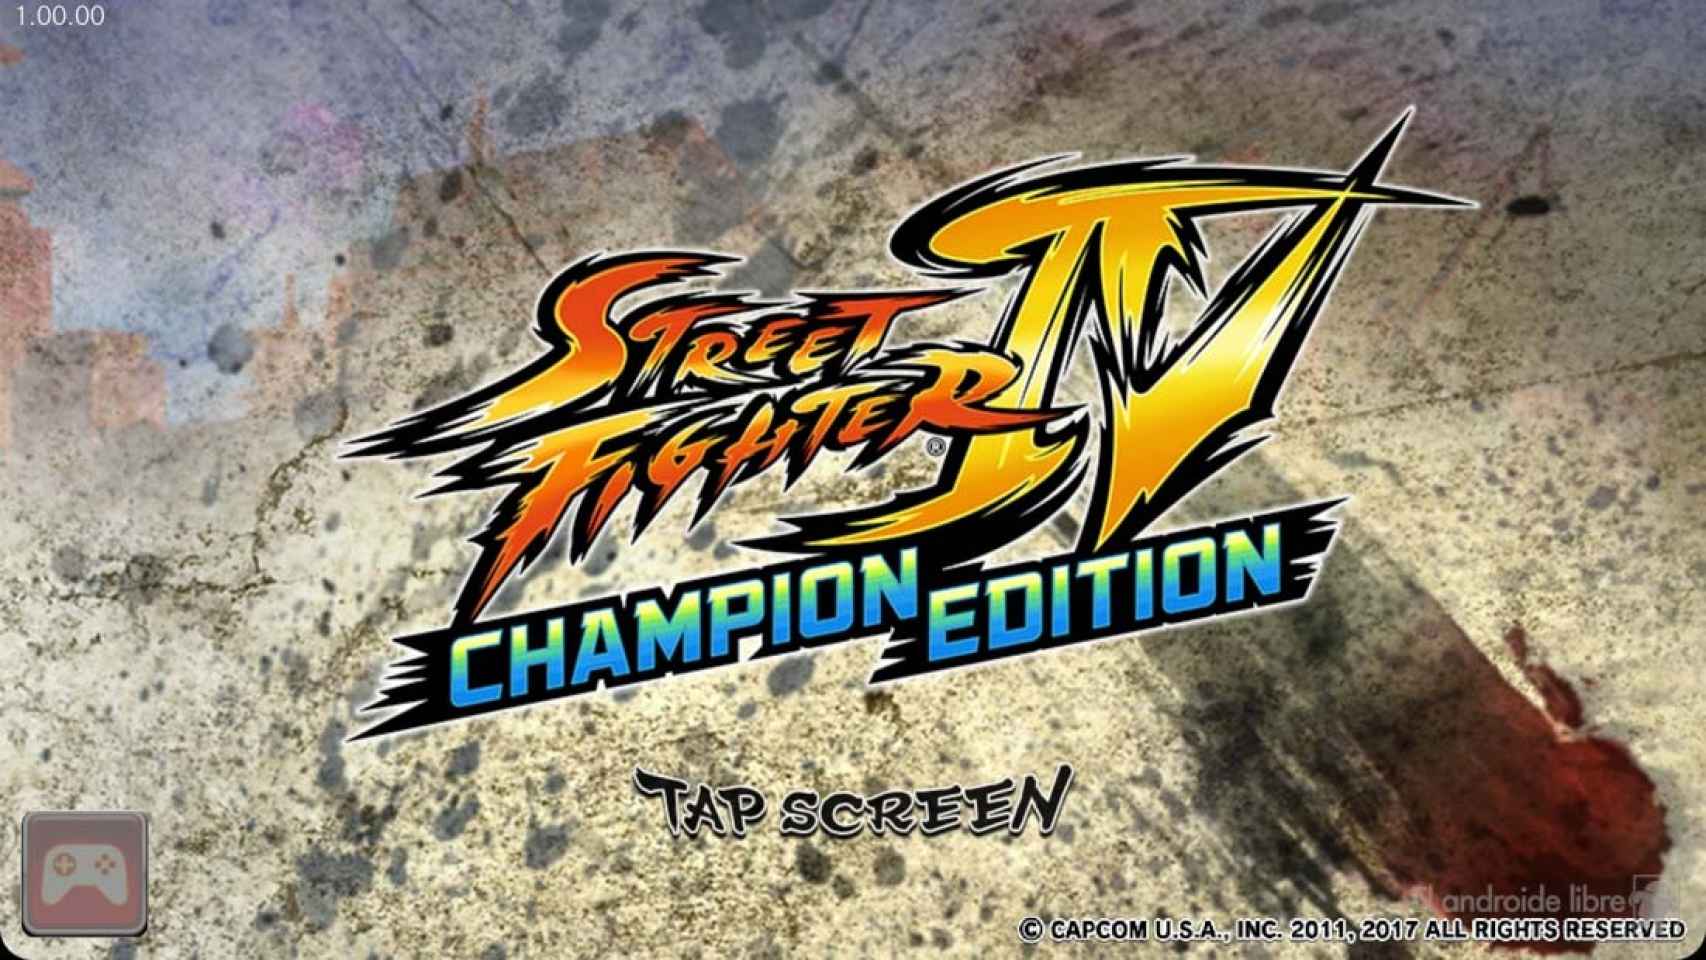 Descarga Street Fighter para Android con la versión IV Champion Edition